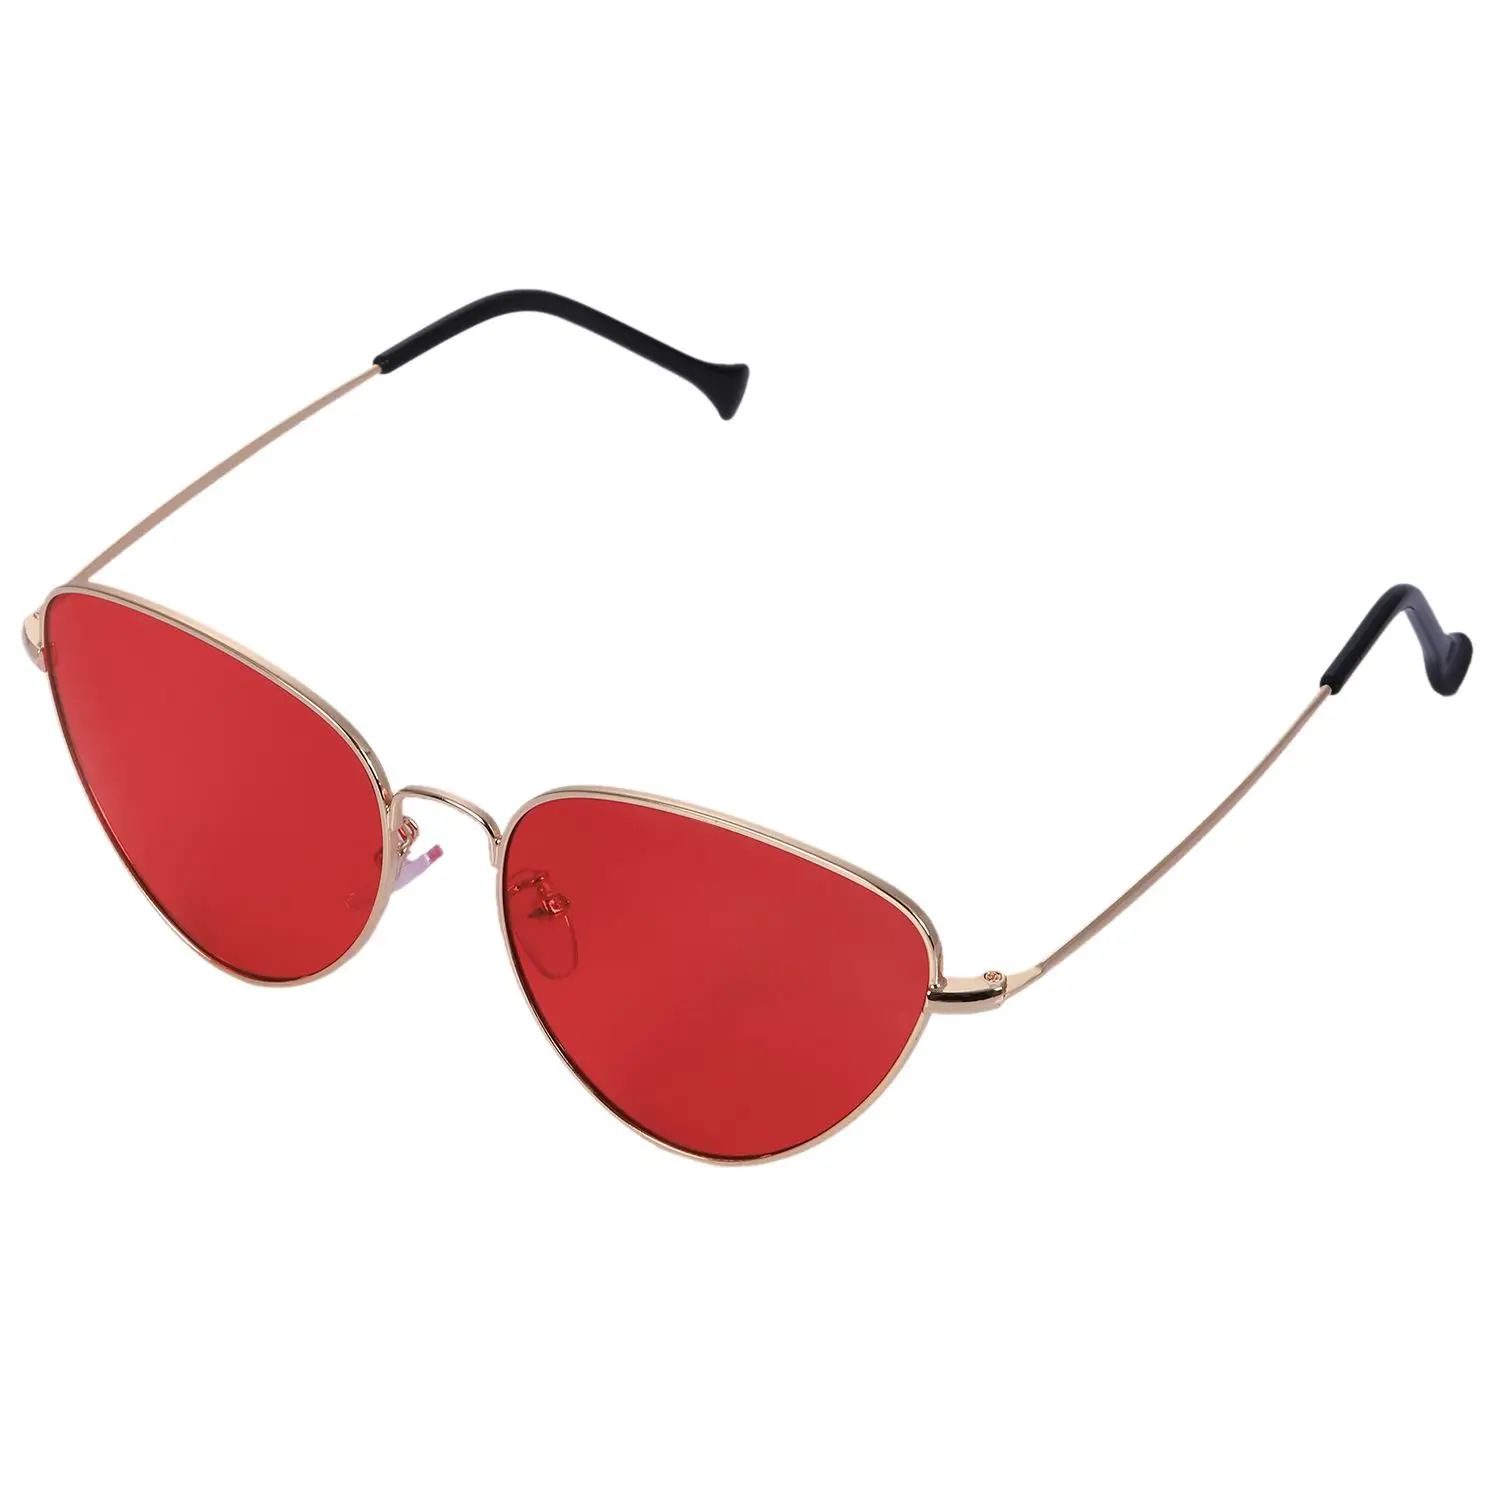 2018 металлический каркас ретро глаза кошки солнцезащитные очки для женская летняя обувь стиль классический зеркало Óculos gafas-де-сол masculino soleil